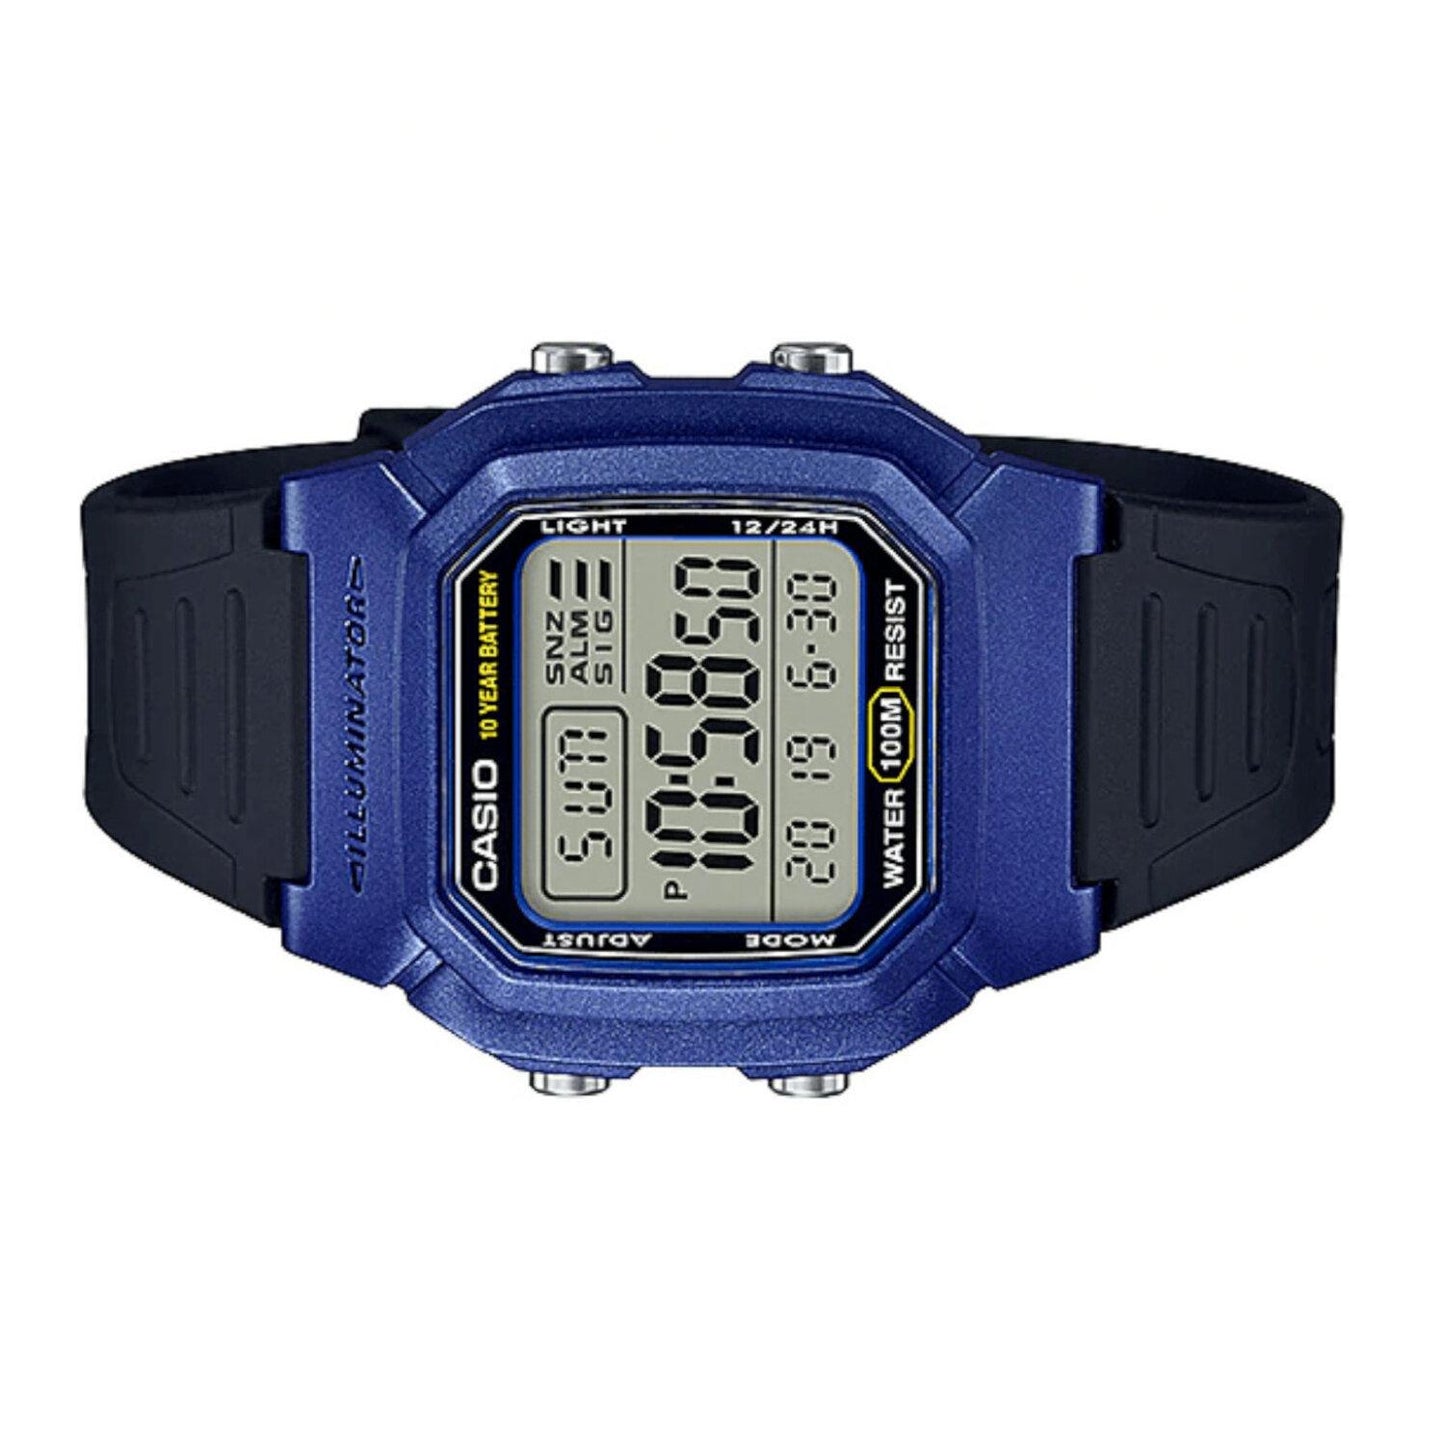 Reloj CASIO W-800HM-2AVCF Illuminator Retro Dual Time(Doble Hora)-Negro